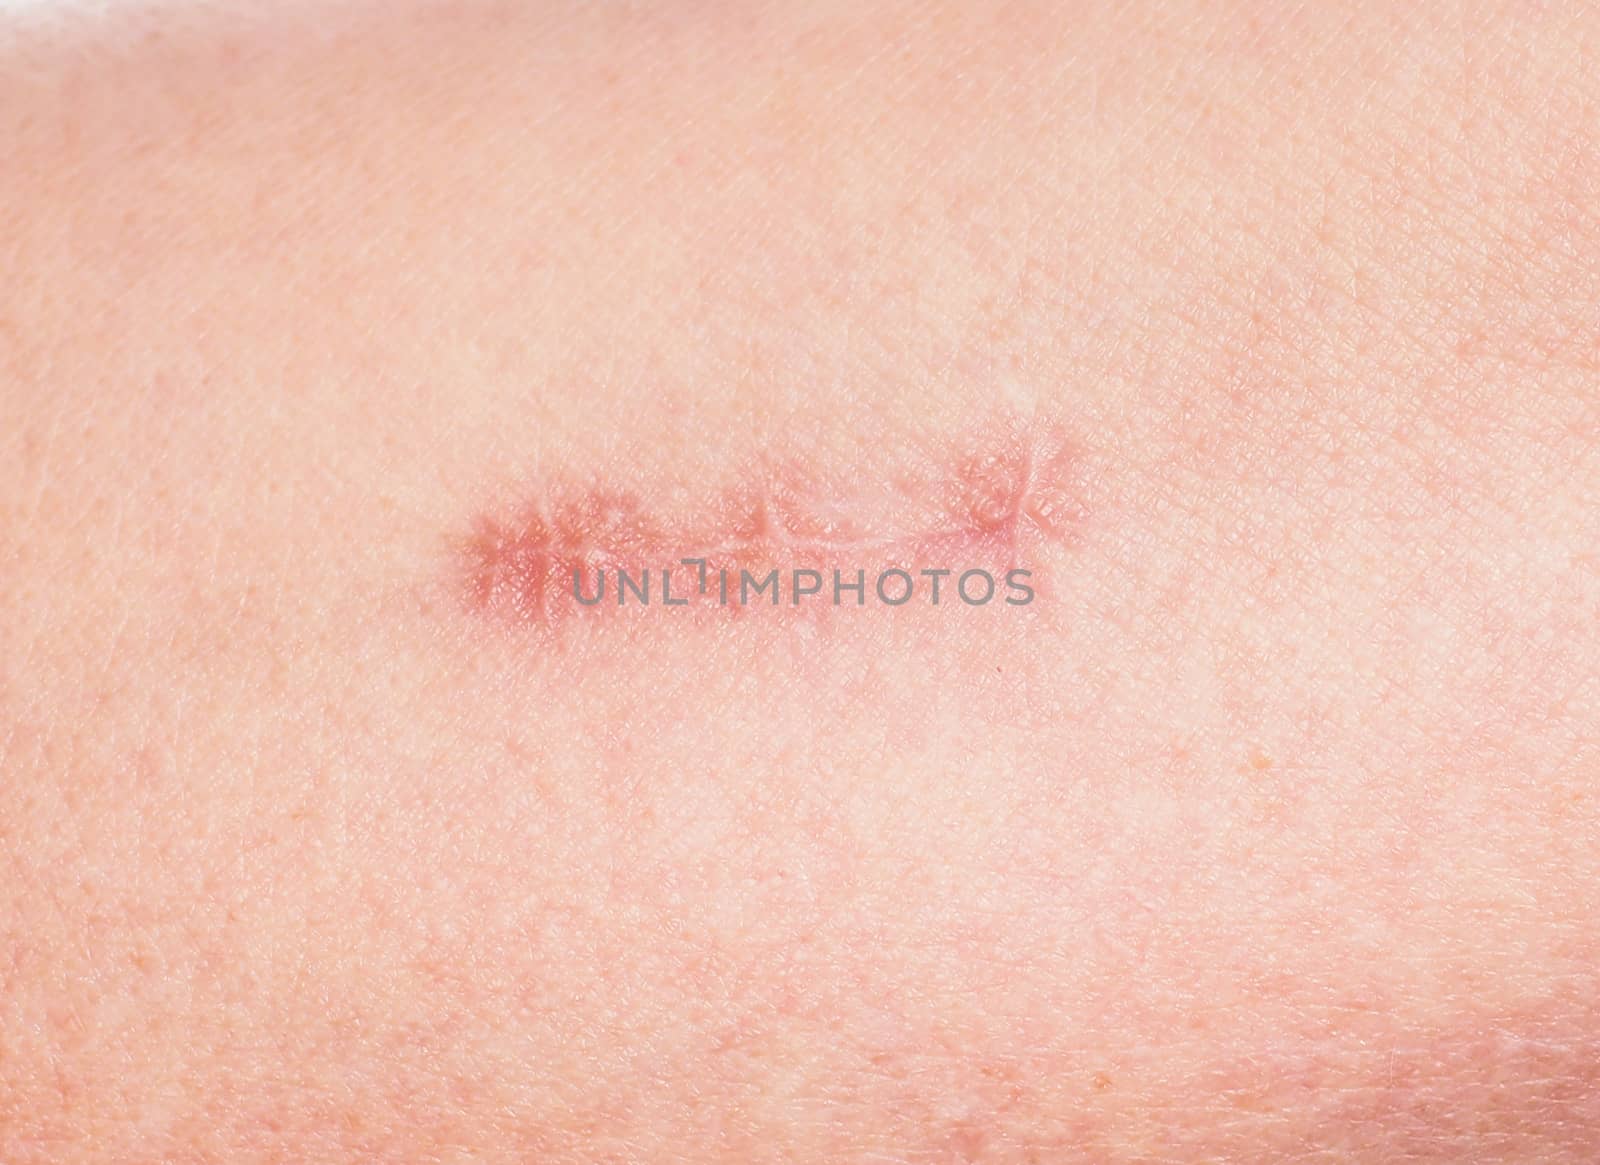 Redness around healing stitches on skin by Arvebettum